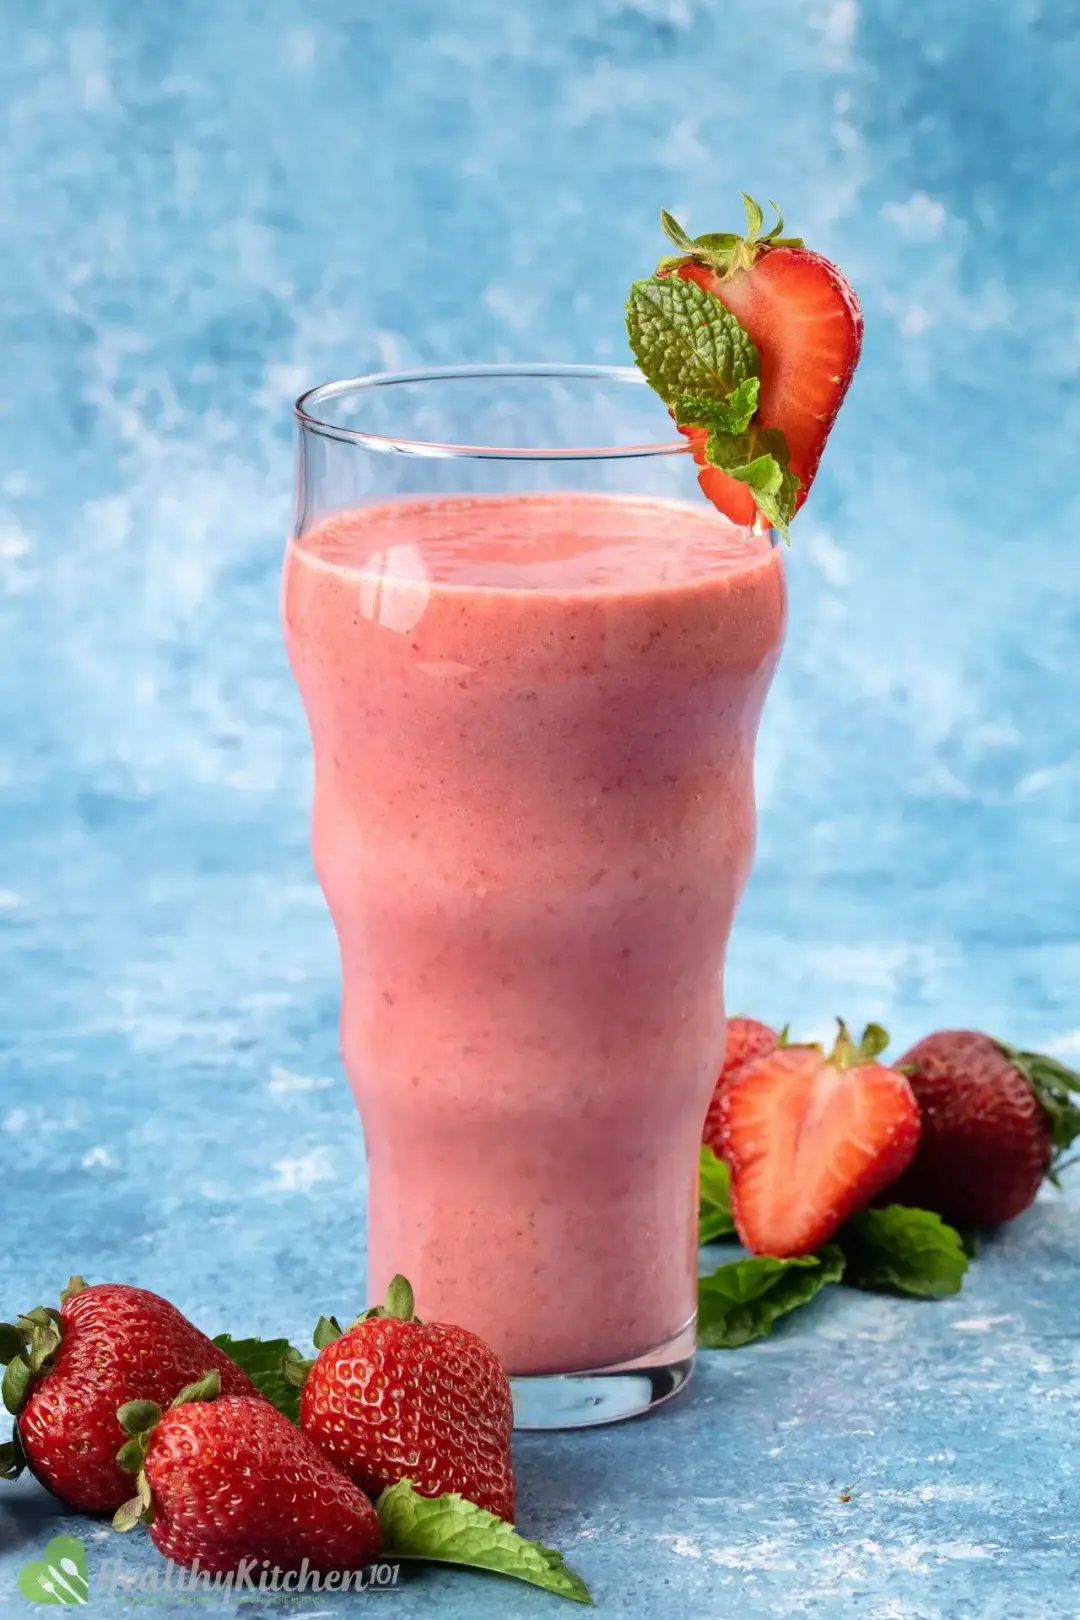 Strawberry Smoothie Recipe Healthykitchen101 5